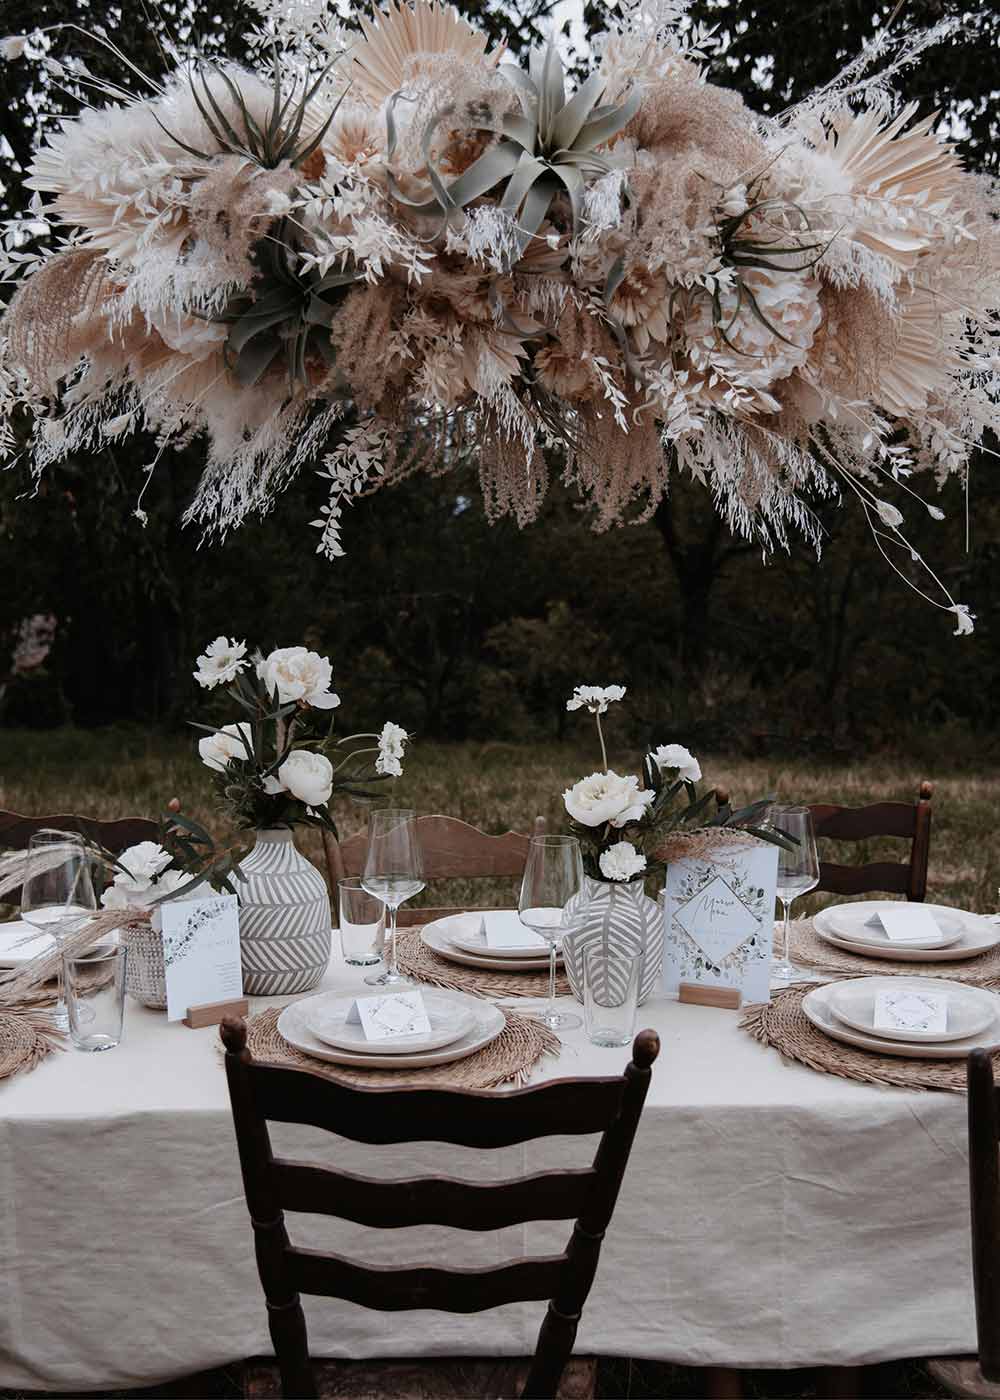 Das Highlight am Hochzeitstisch ist die auffällige Pflanzendeko über den Tischen. Zusammen mit den Blumen auf den Tischen und der liebevoll ausgewählten Papeterie wirken sie sehr harmonisch.